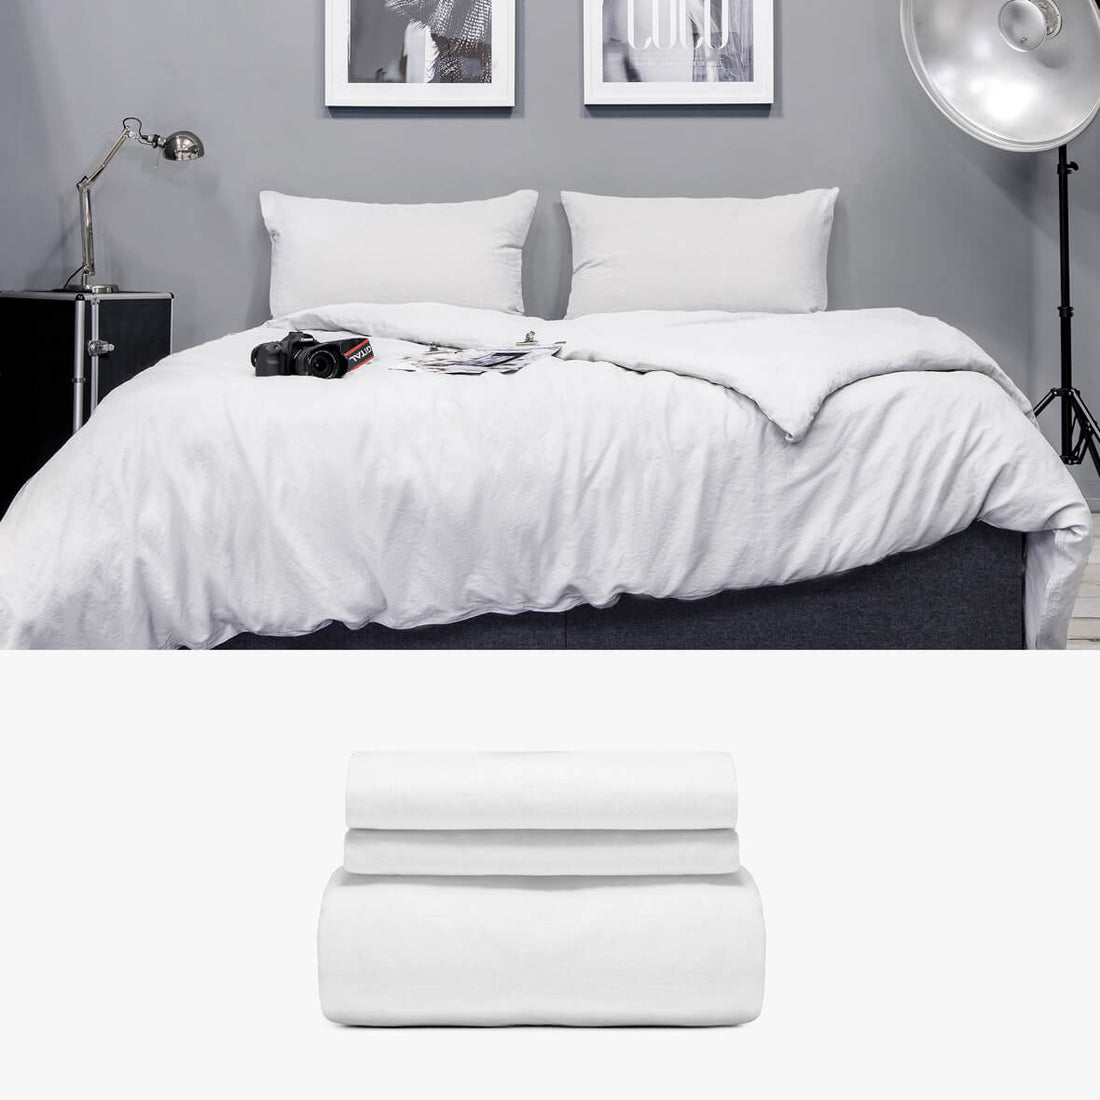 Bettwäsche 240x220 aus Halbleinen in weiß Basic Set | kuschelfashion